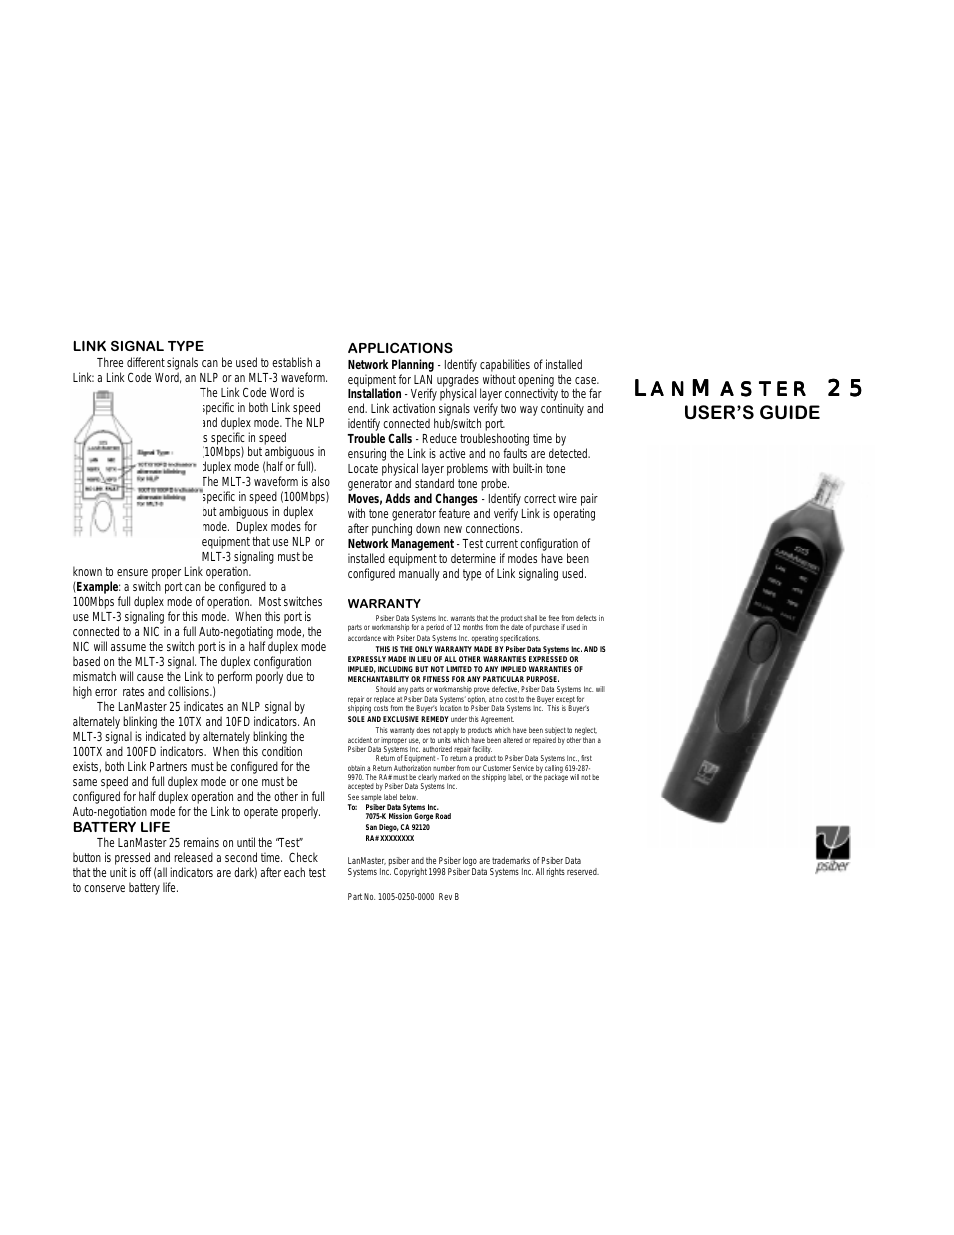 LanMaster 25